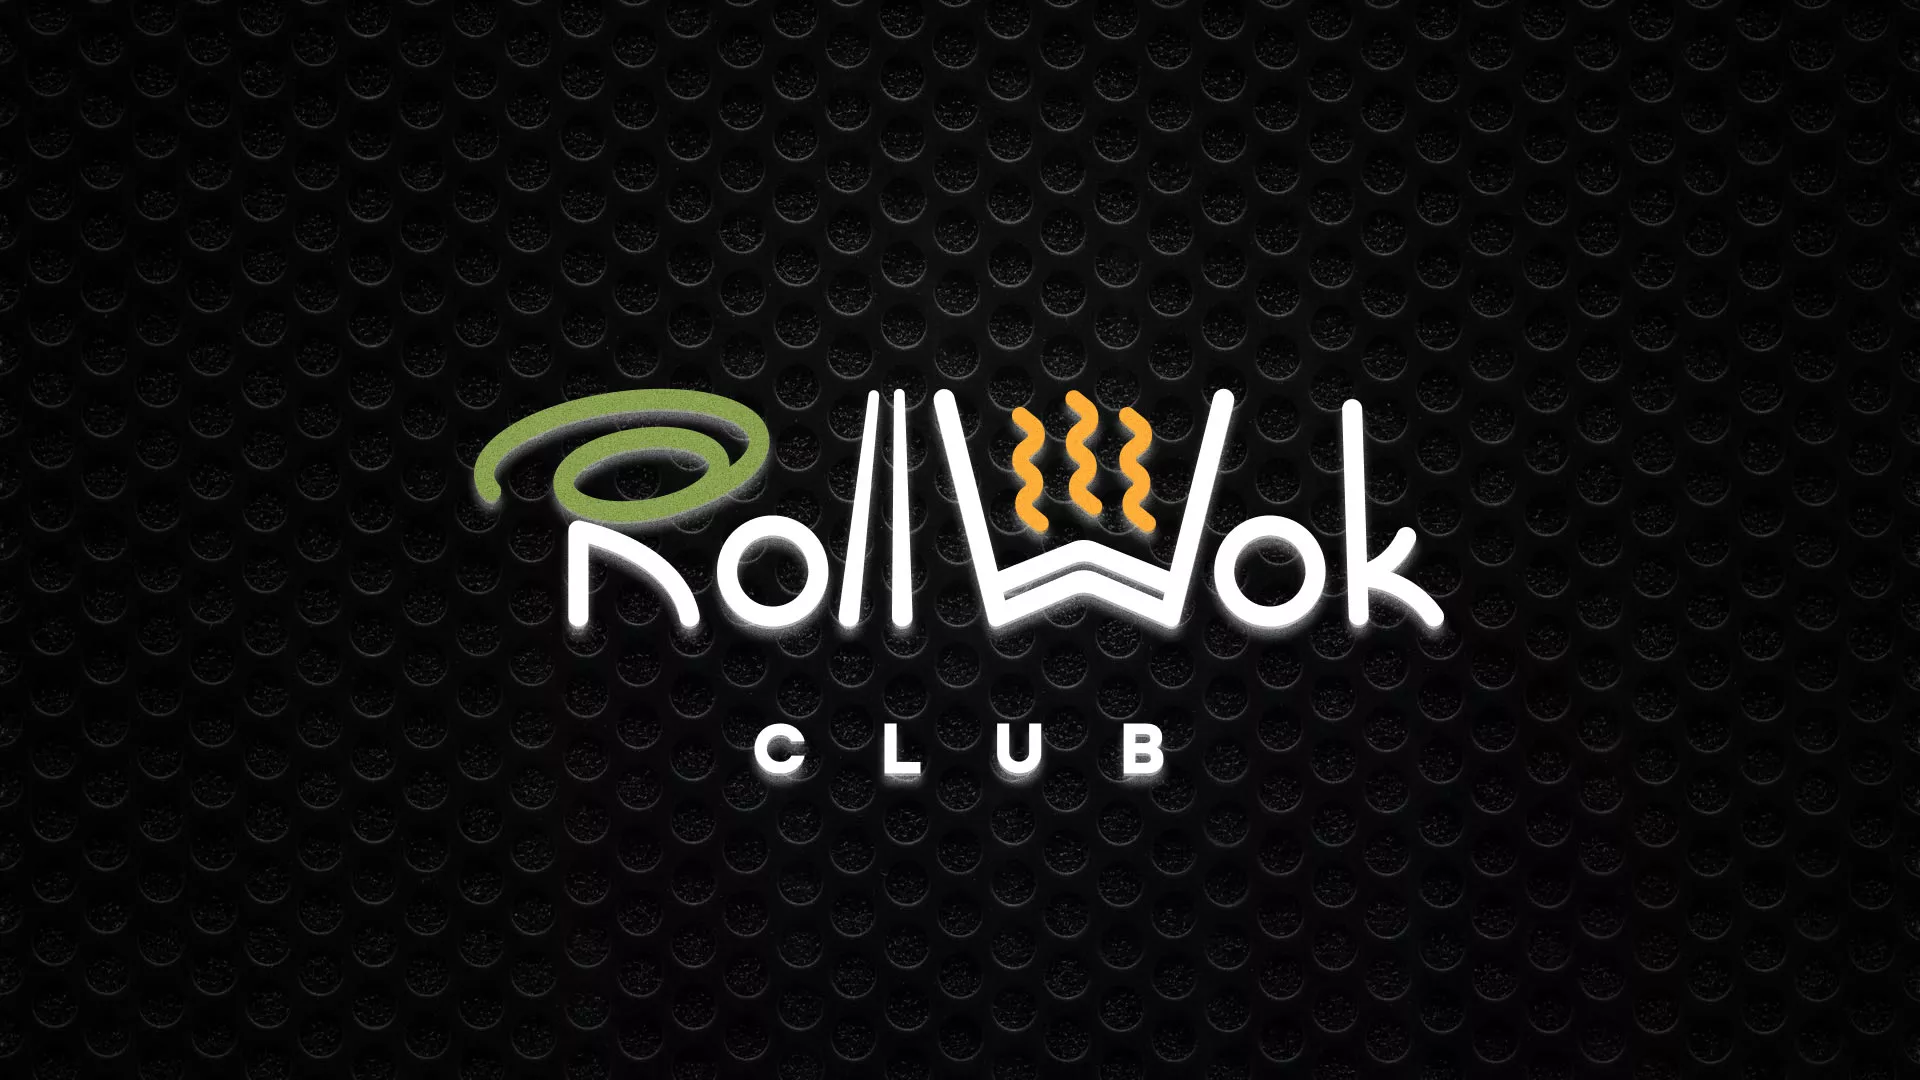 Брендирование торговых точек суши-бара «Roll Wok Club» в Заполярном